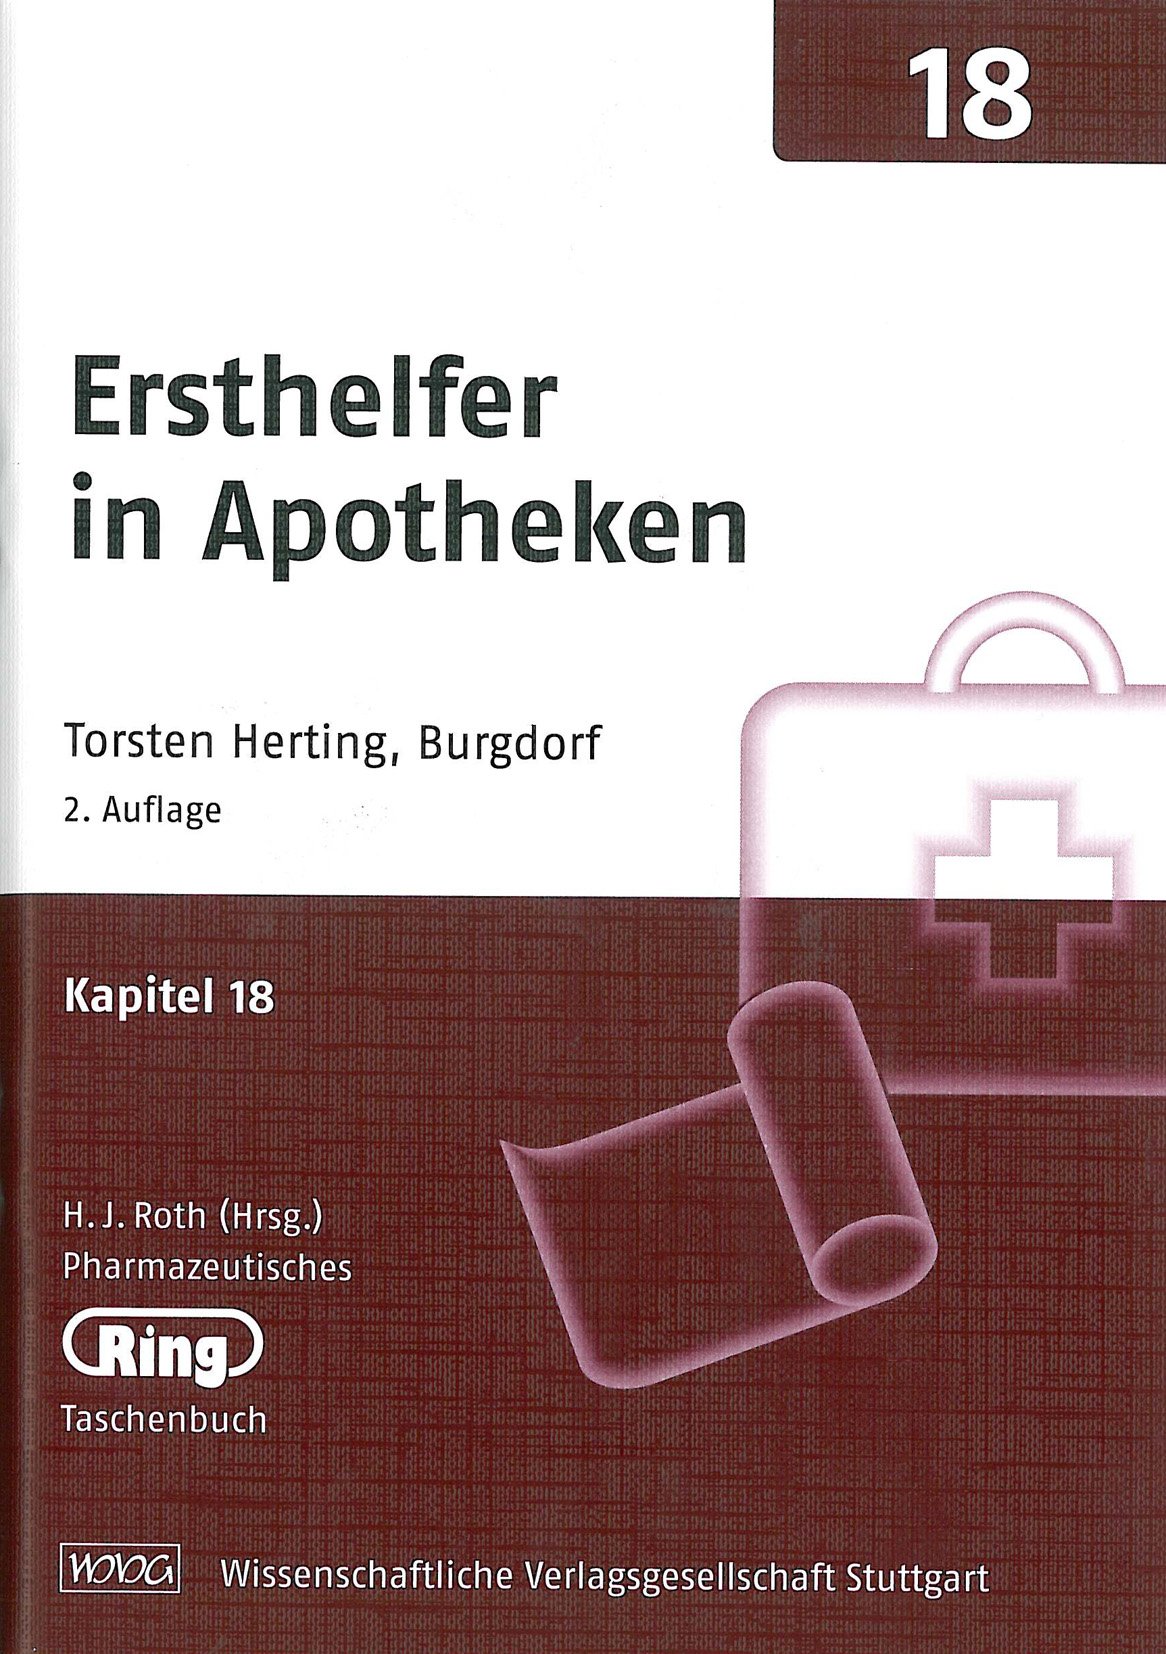 Pharmazeut. Ringtaschenbuch Bd.18 Ersthelfer in Apotheken